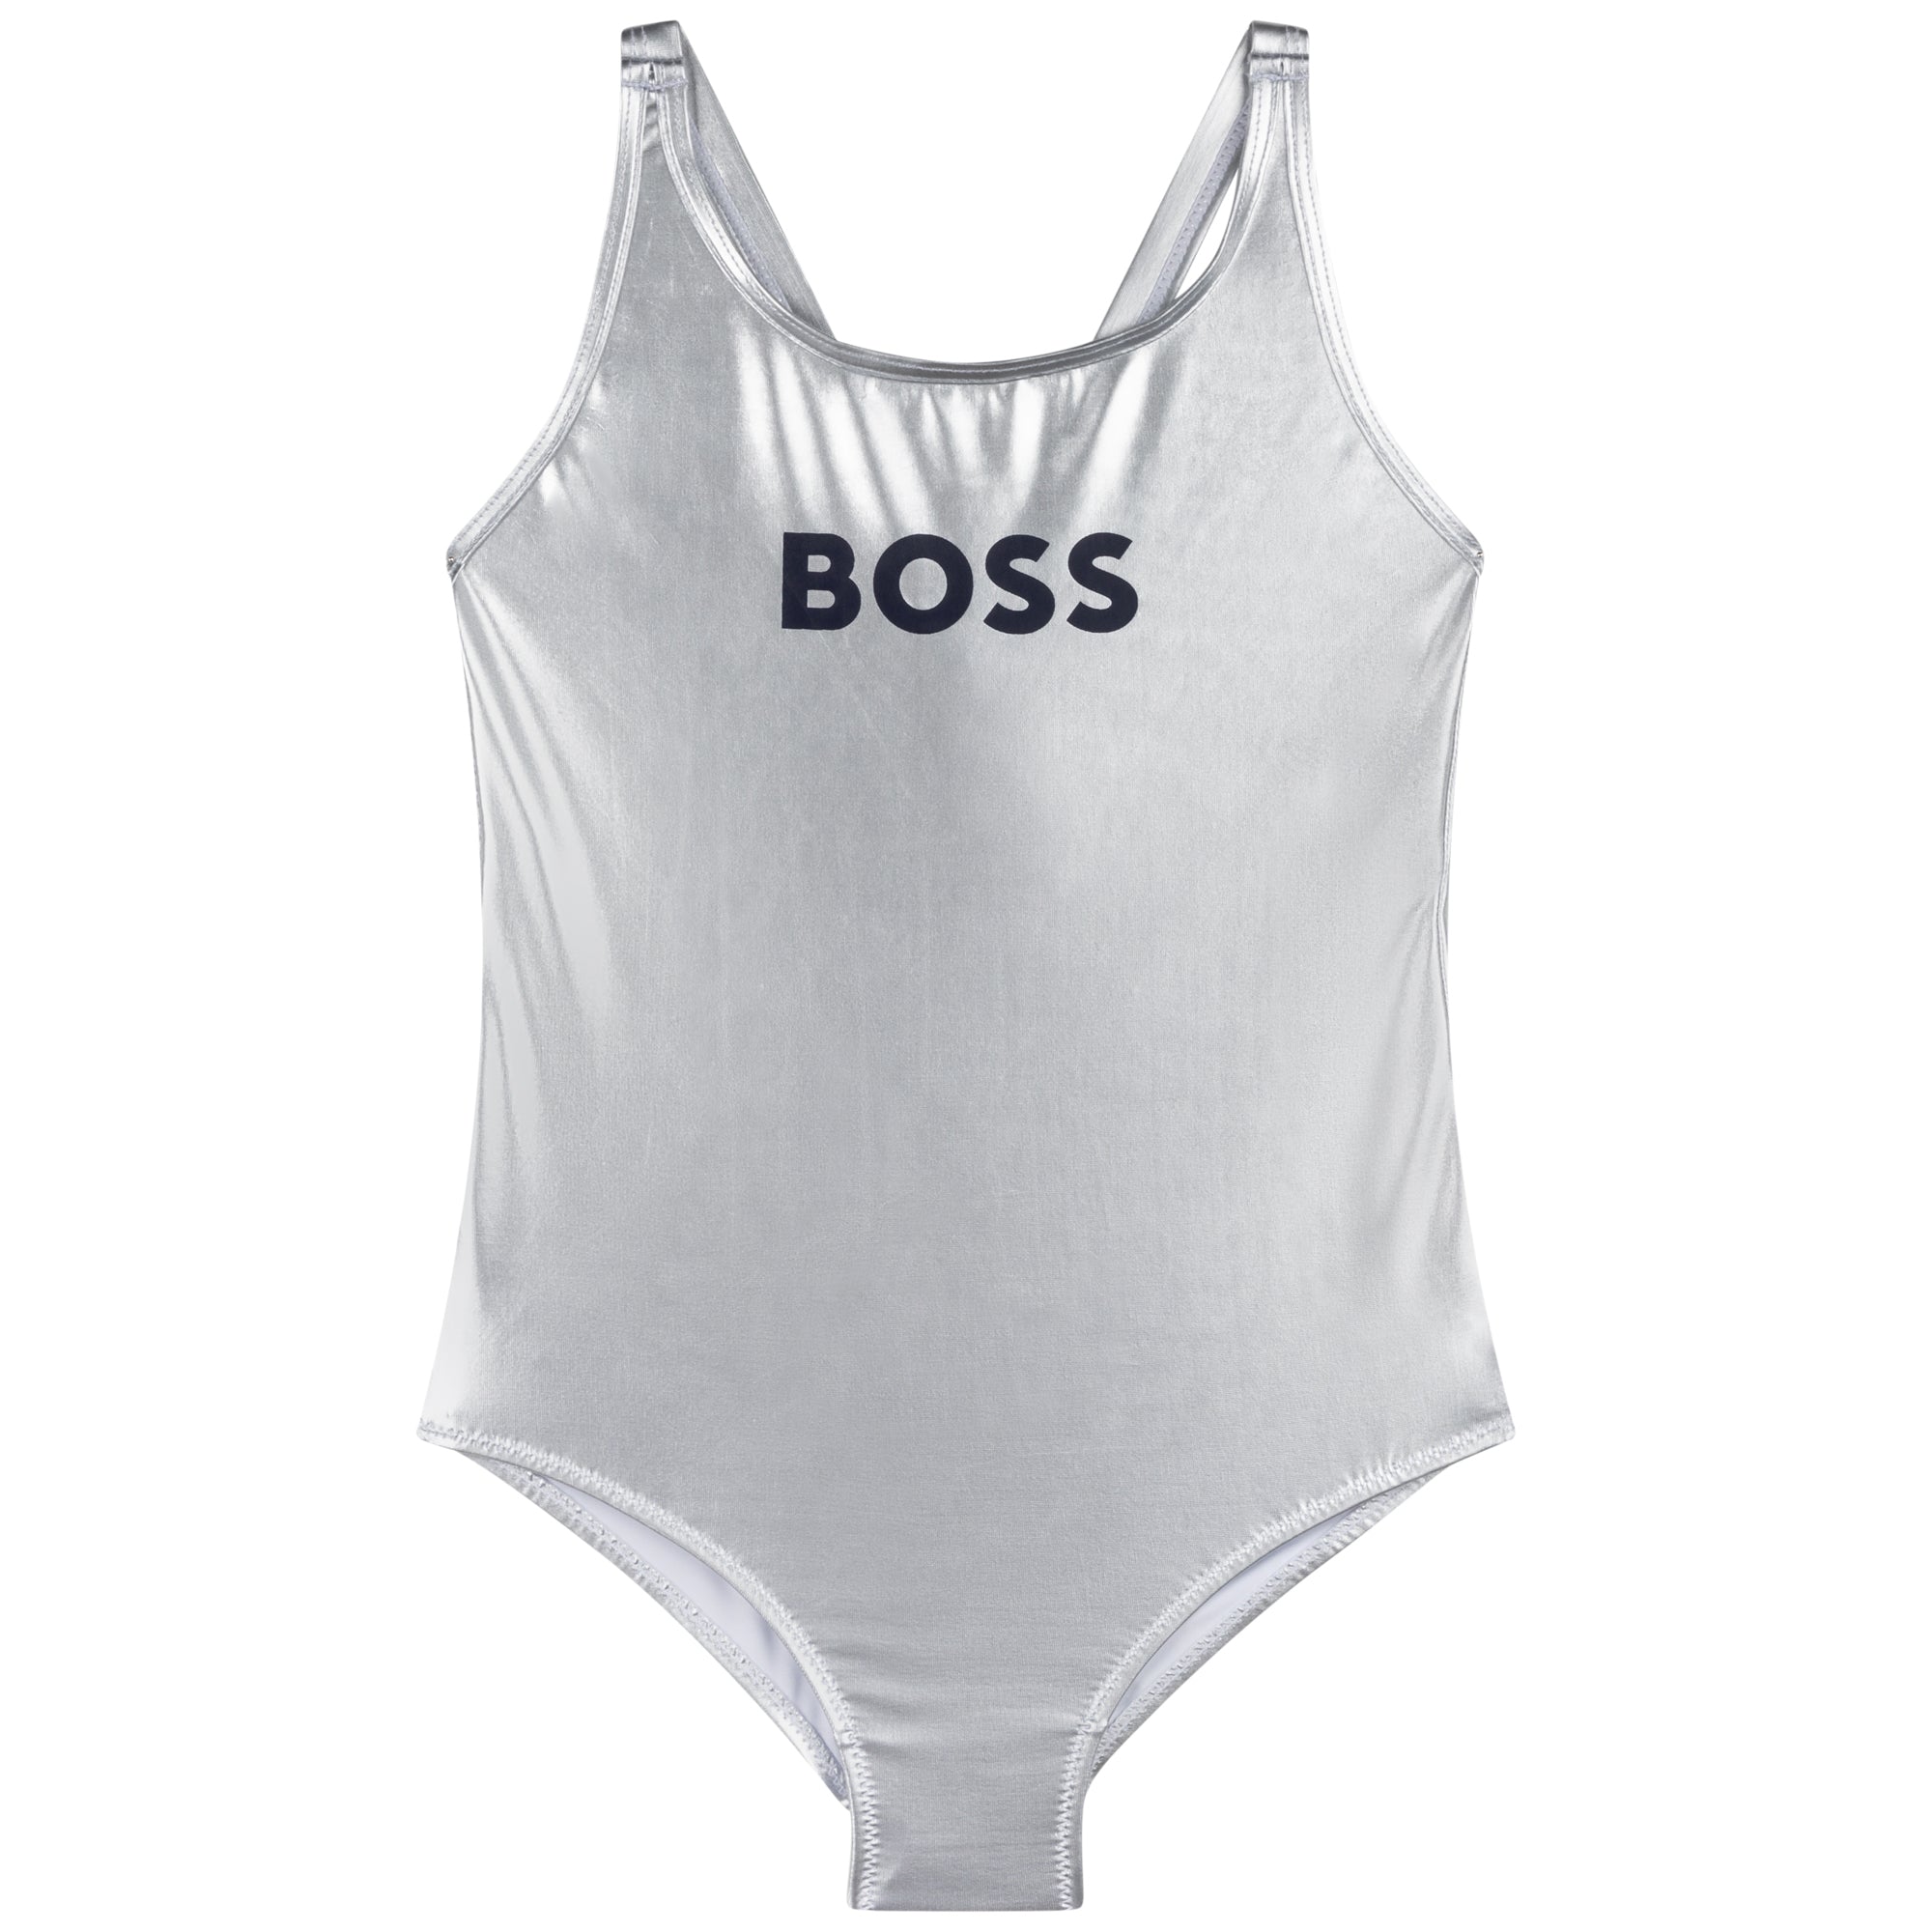 HUGO BOSS - Swimming Costume - Grey